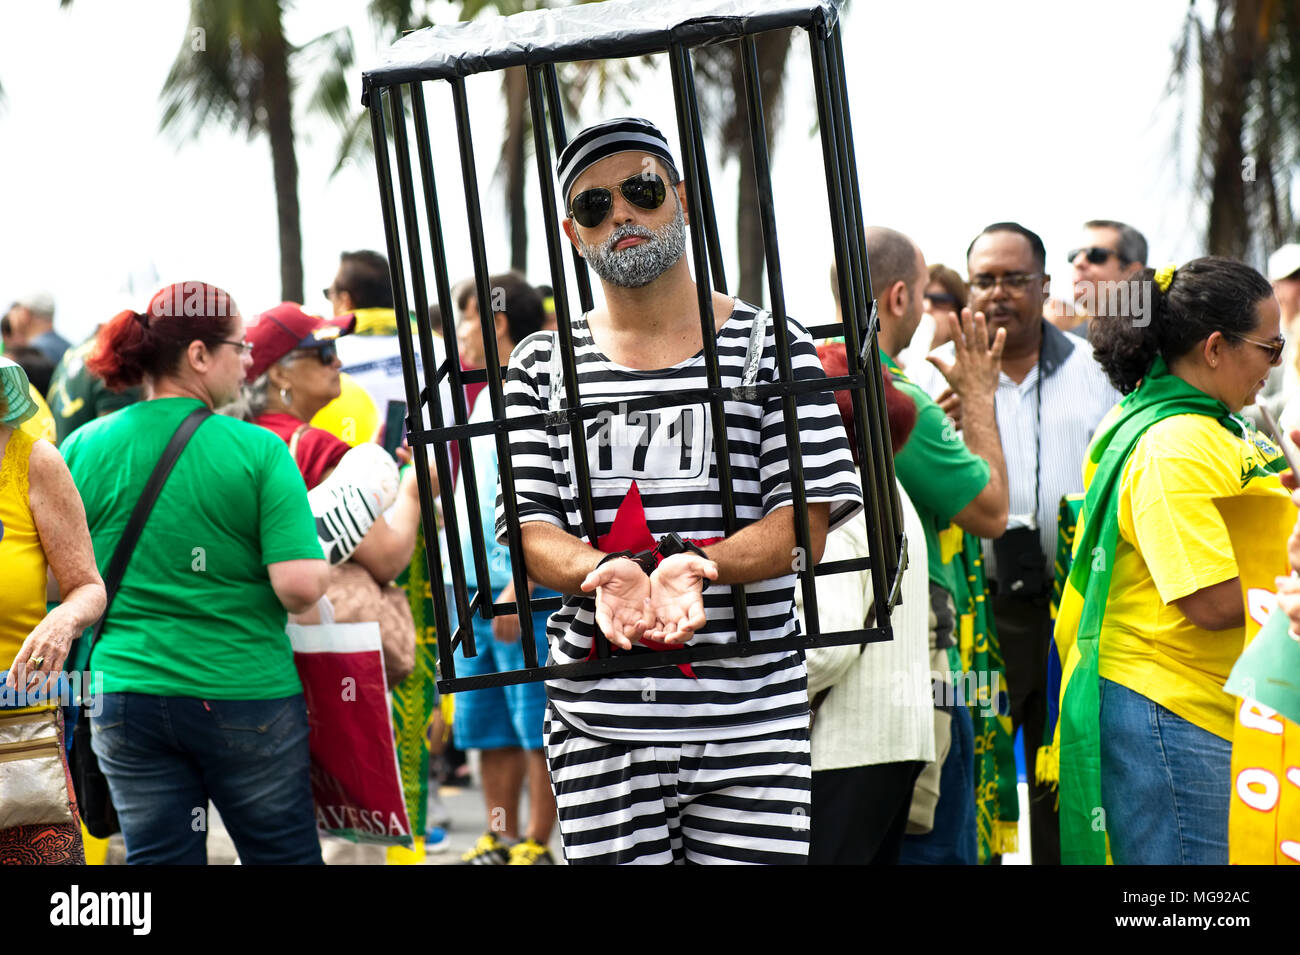 Brésil - Juillet 31, 2016 Des manifestants : prendre part à une manifestation pour réclamer la destitution du Président Dilma et l'arrestation de l'ancien Président Lula Banque D'Images